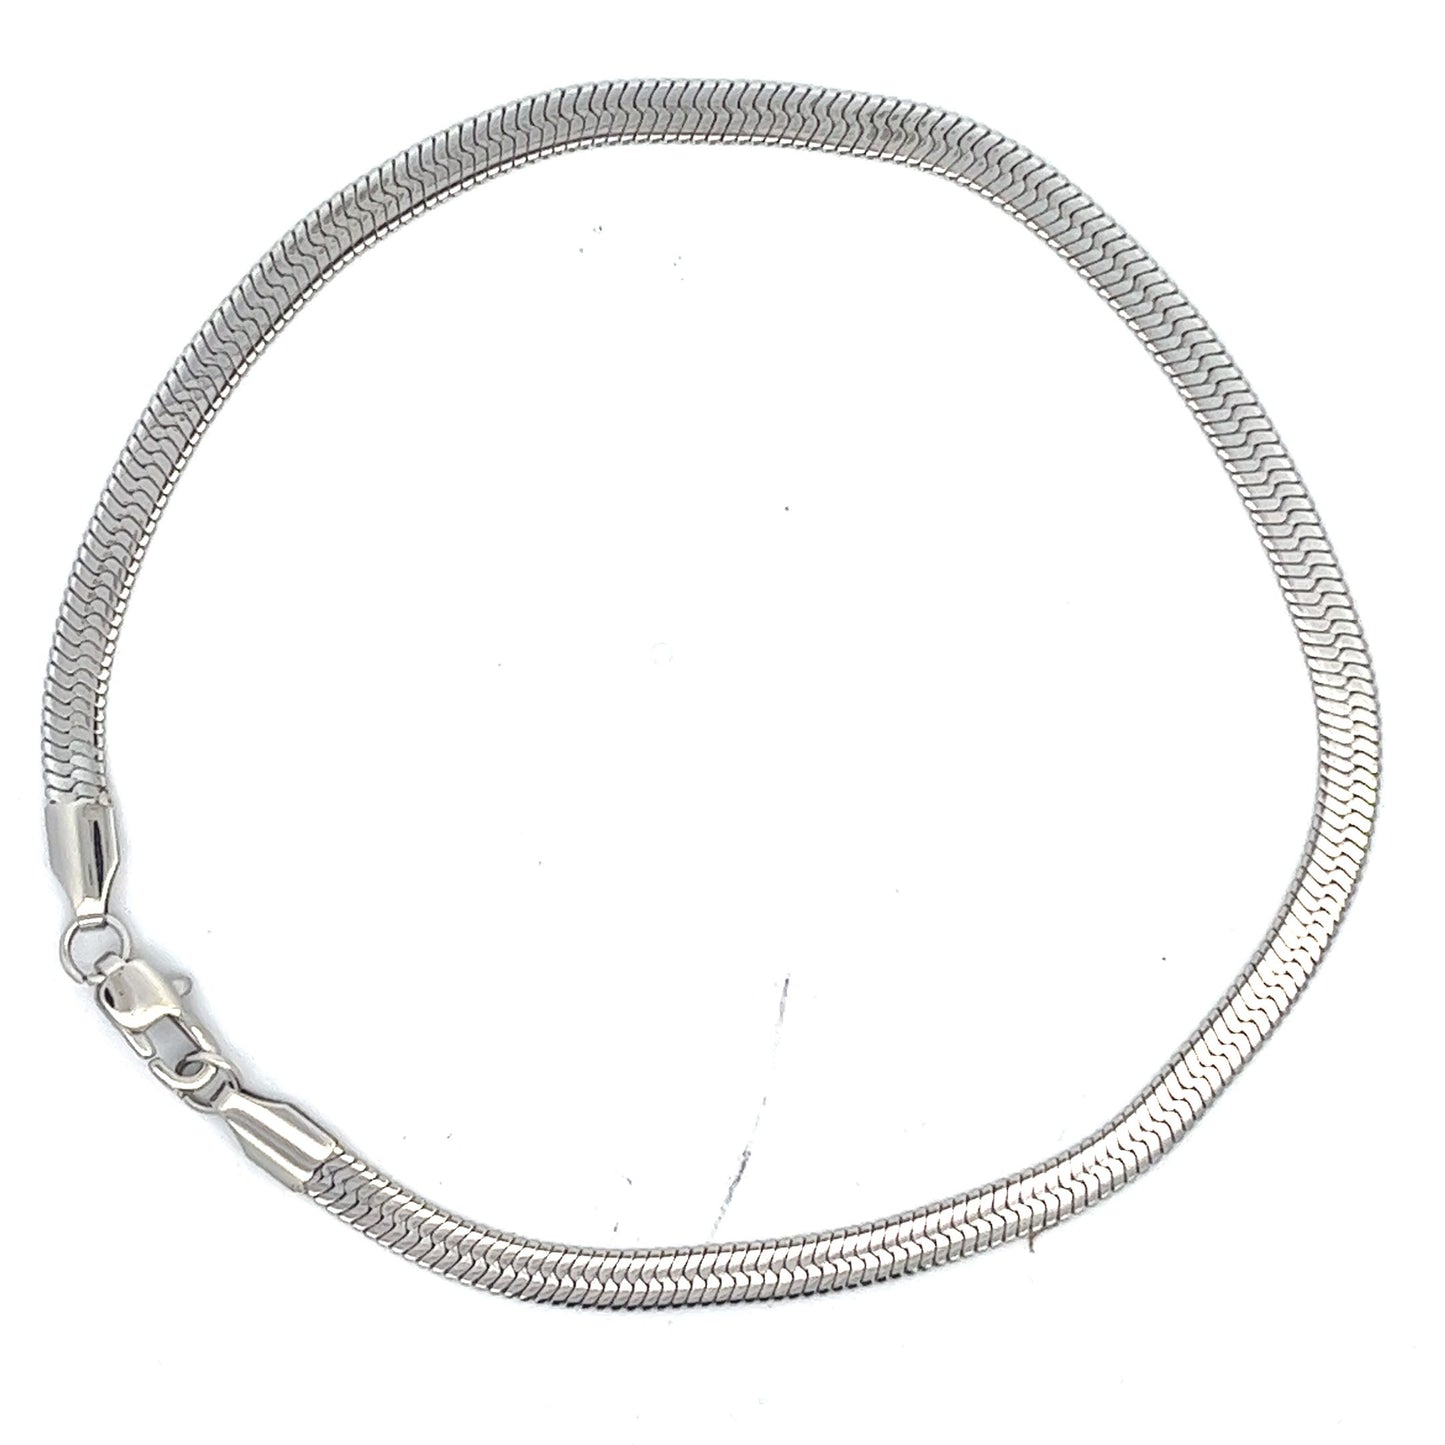 4mm Unisex Stainless Steel Herringbone Chain